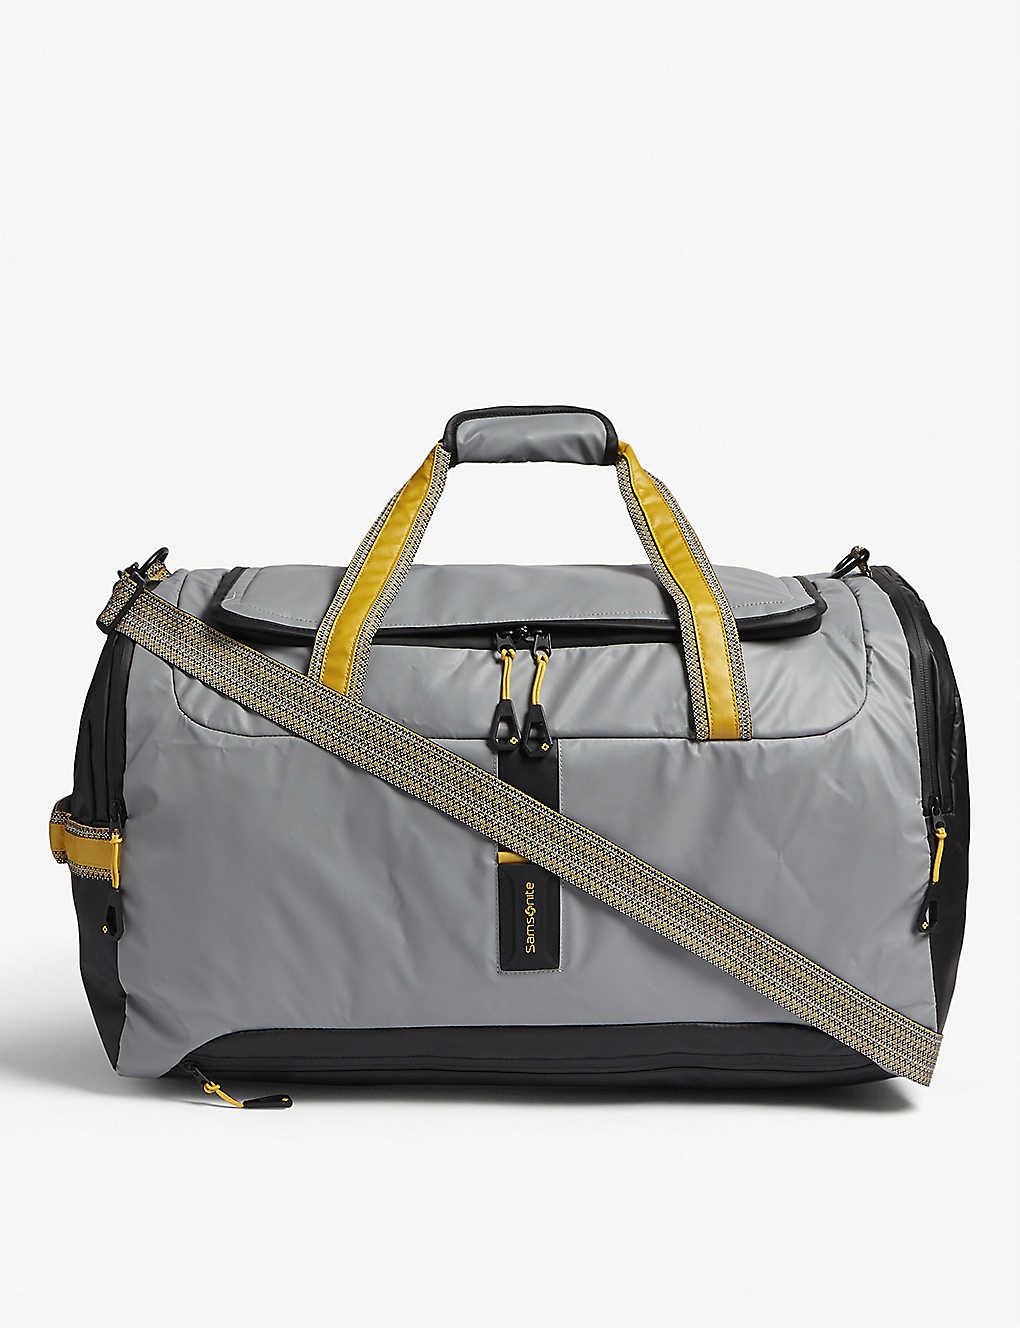 Samsonite Paradiver Light Duffle Bag in Gray | Lyst